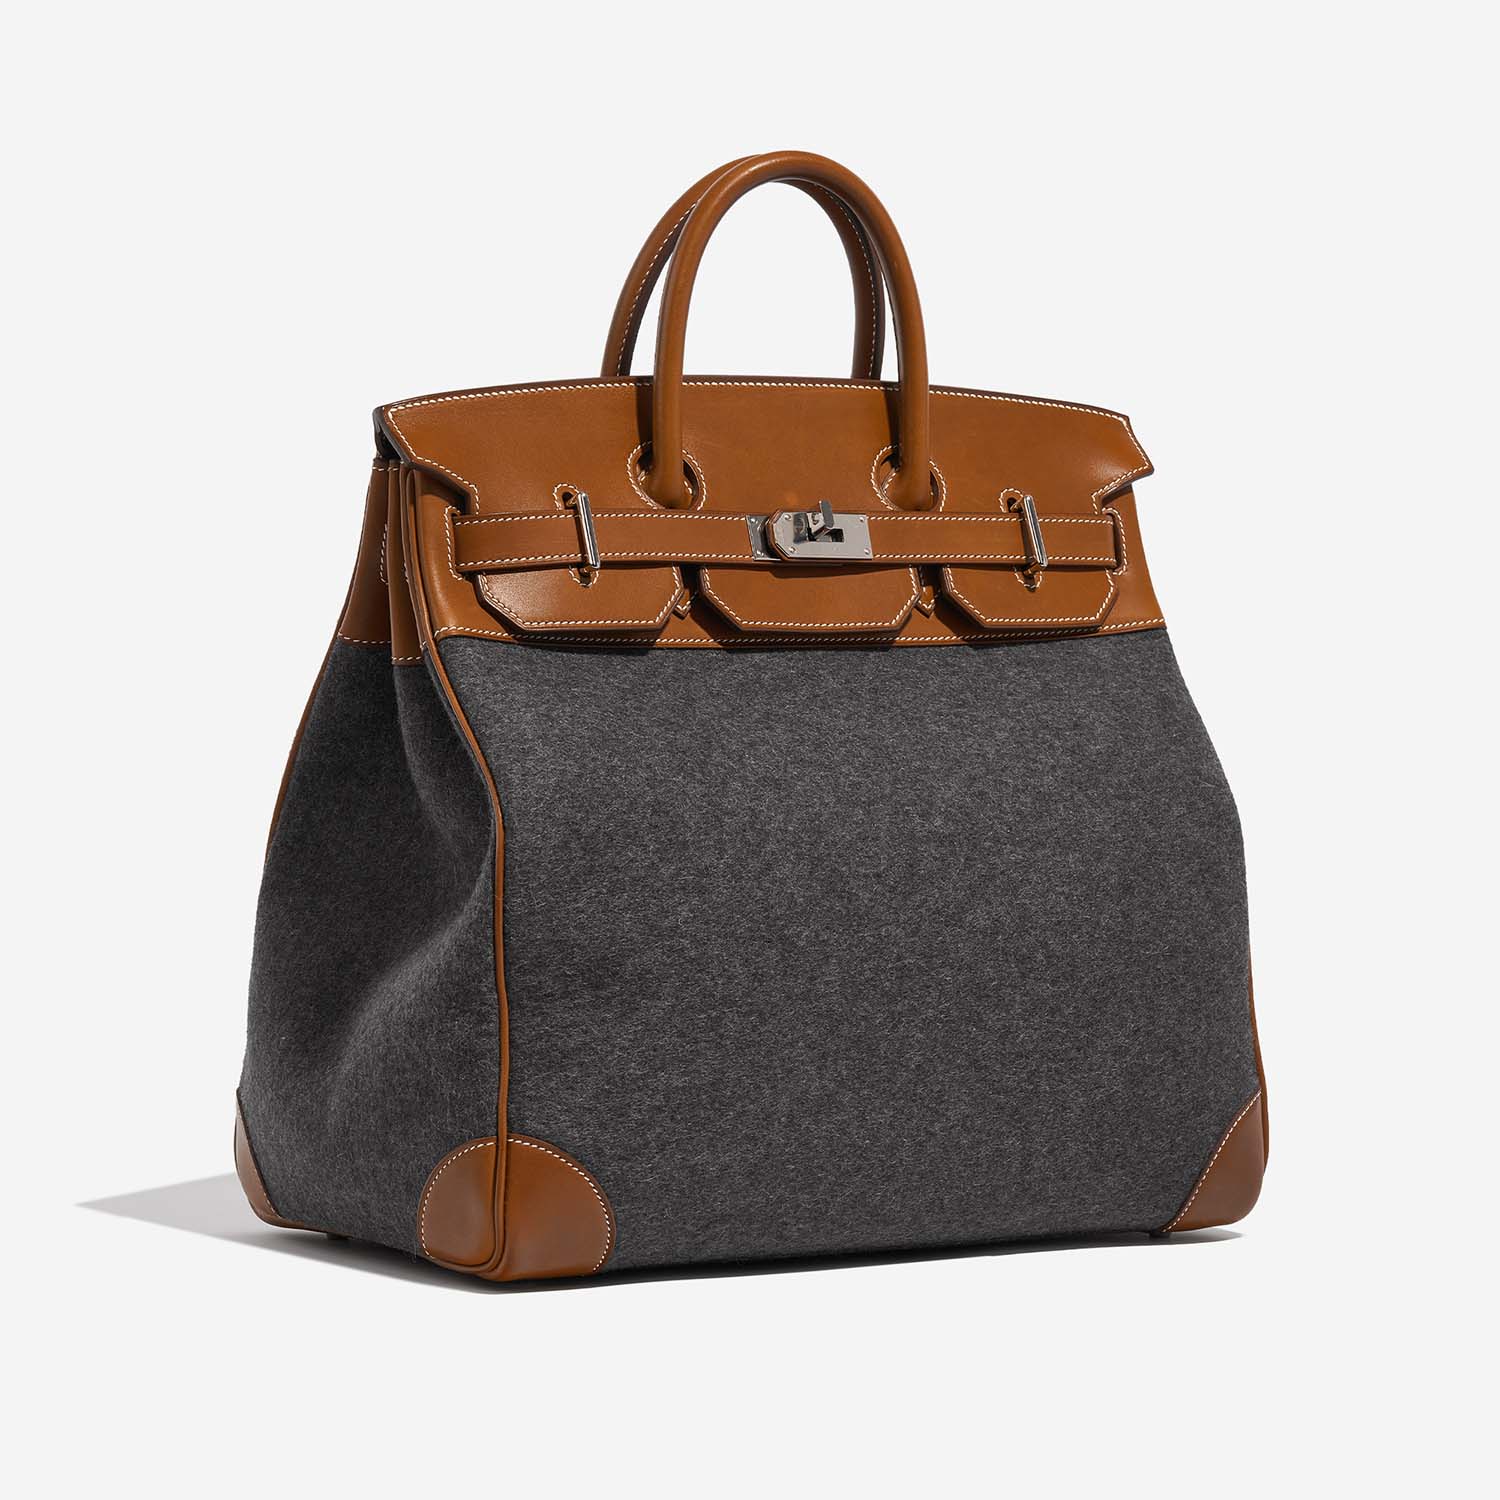 Hermès HautACourroies 40 GrisMoyen-Fauve 6SF S | Verkaufen Sie Ihre Designer-Tasche auf Saclab.com